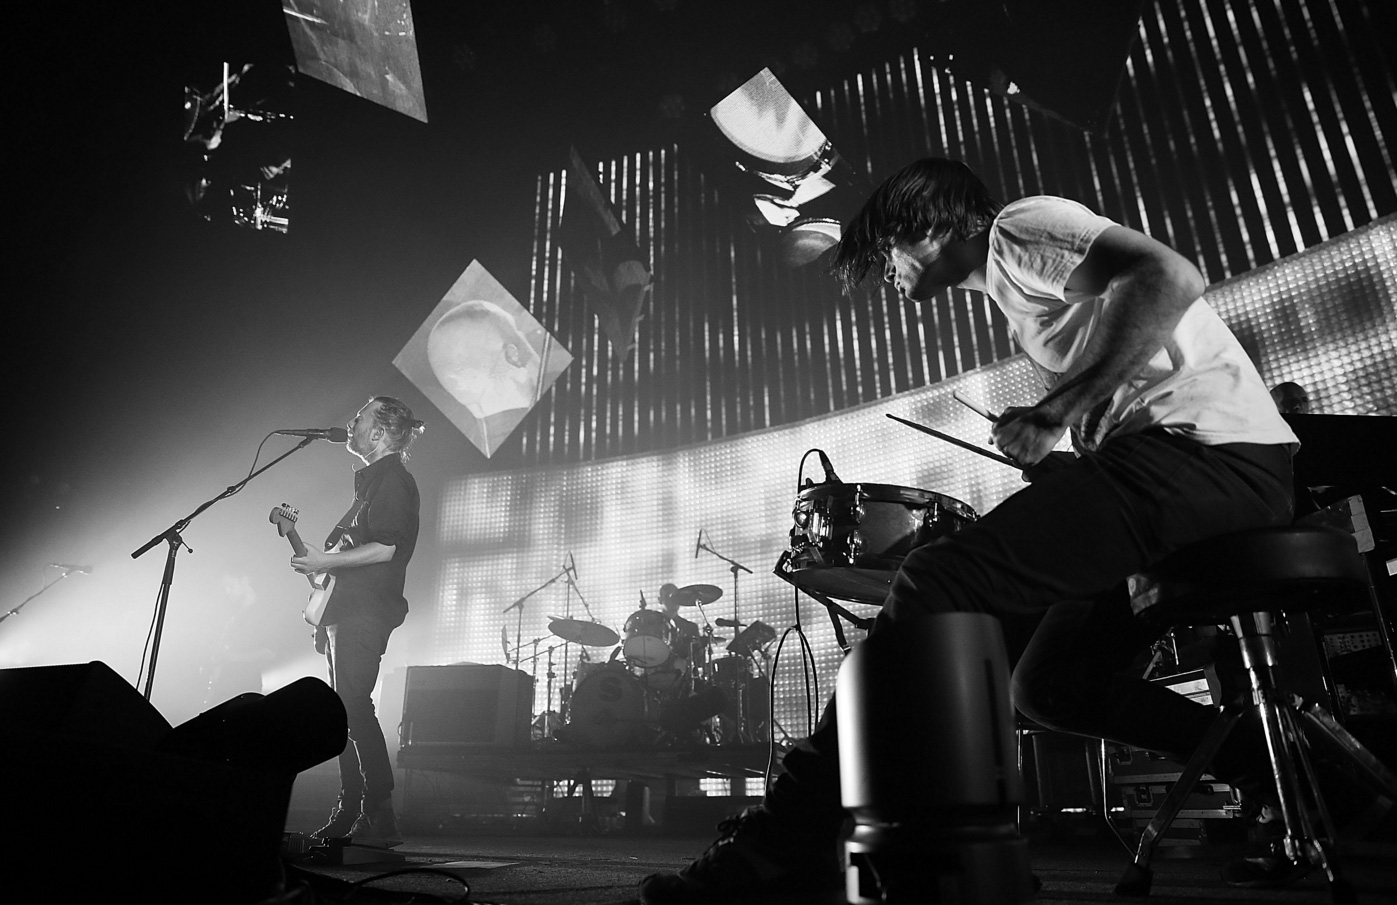 RSegún estudio, "True Love Waits" es la canción más triste de Radiohead